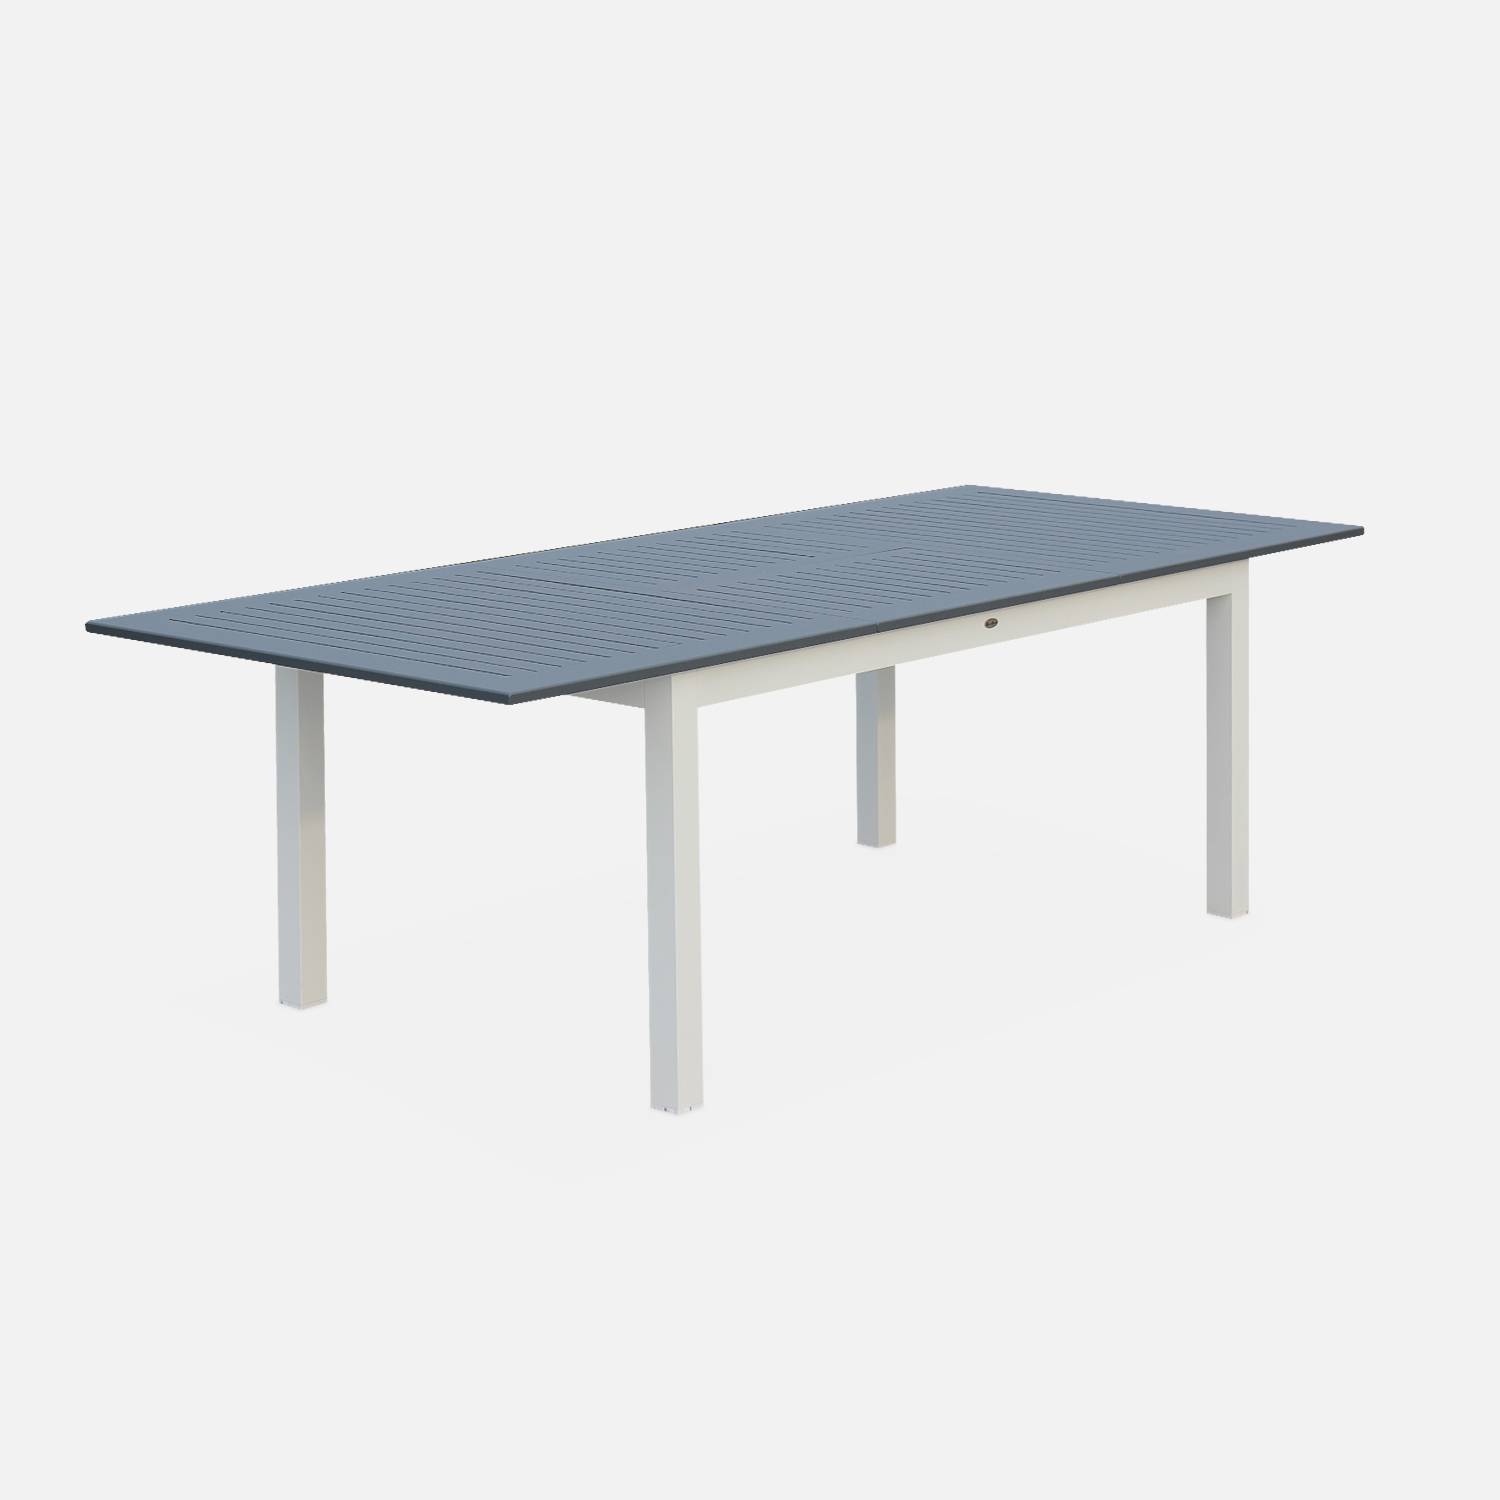 Uitschuifbare tafel - Chicago lichtgrijs - Aluminium tafel 175/245cm met verlengstuk Photo1